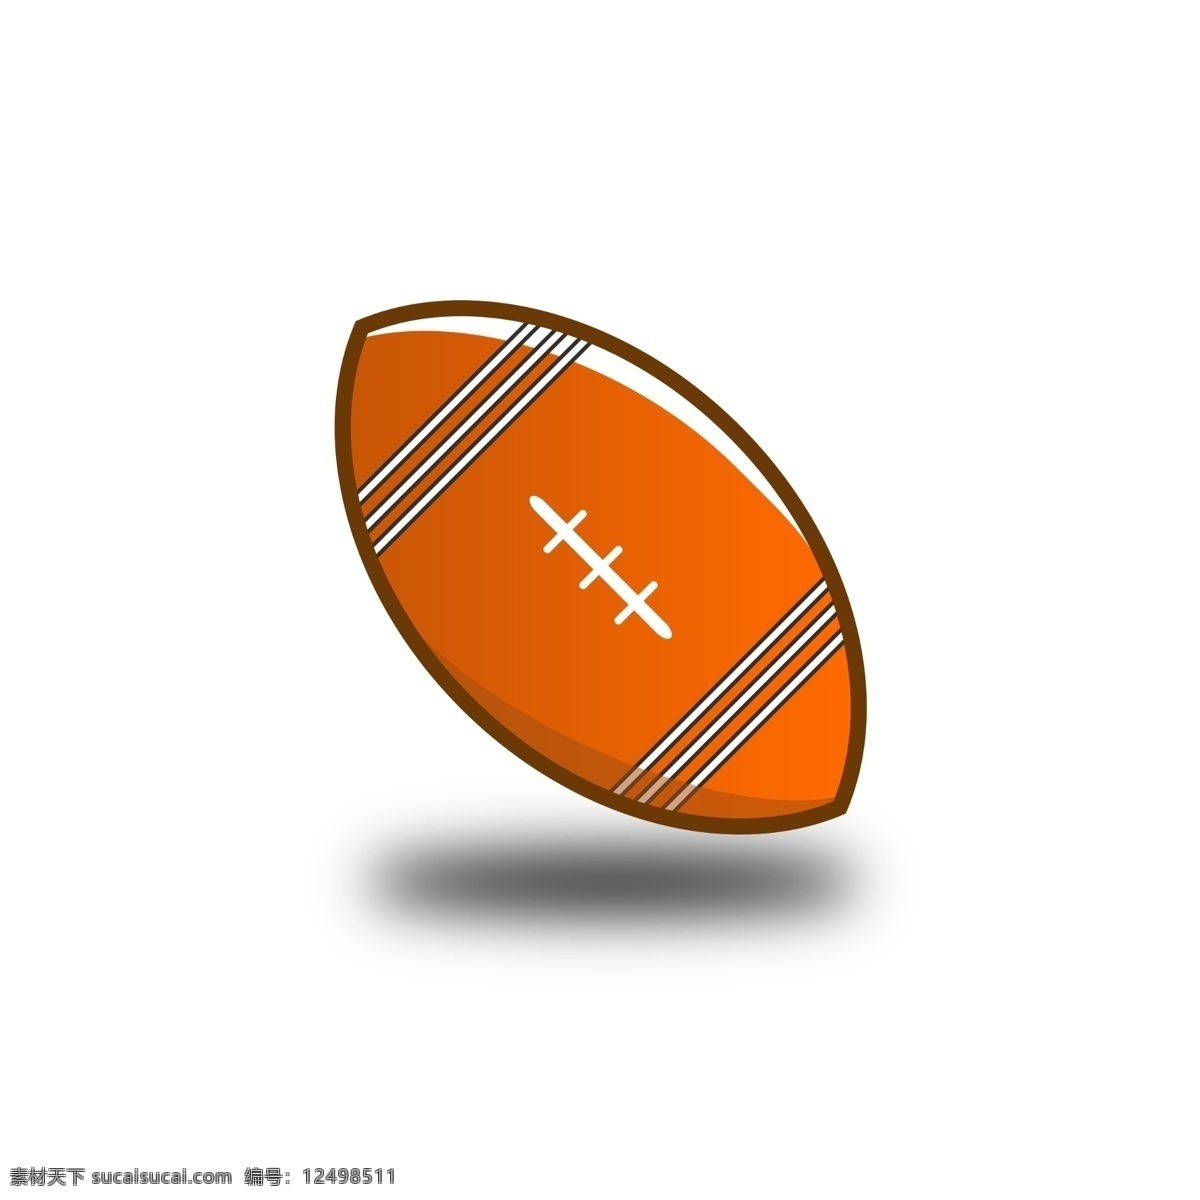 橄榄球 logoicon 扁平化 图标 图案 橄榄 棕色球 球 棕色橄榄球 运动 扁平化橄榄球 logo 橄榄球图标 橄榄球图案 icon